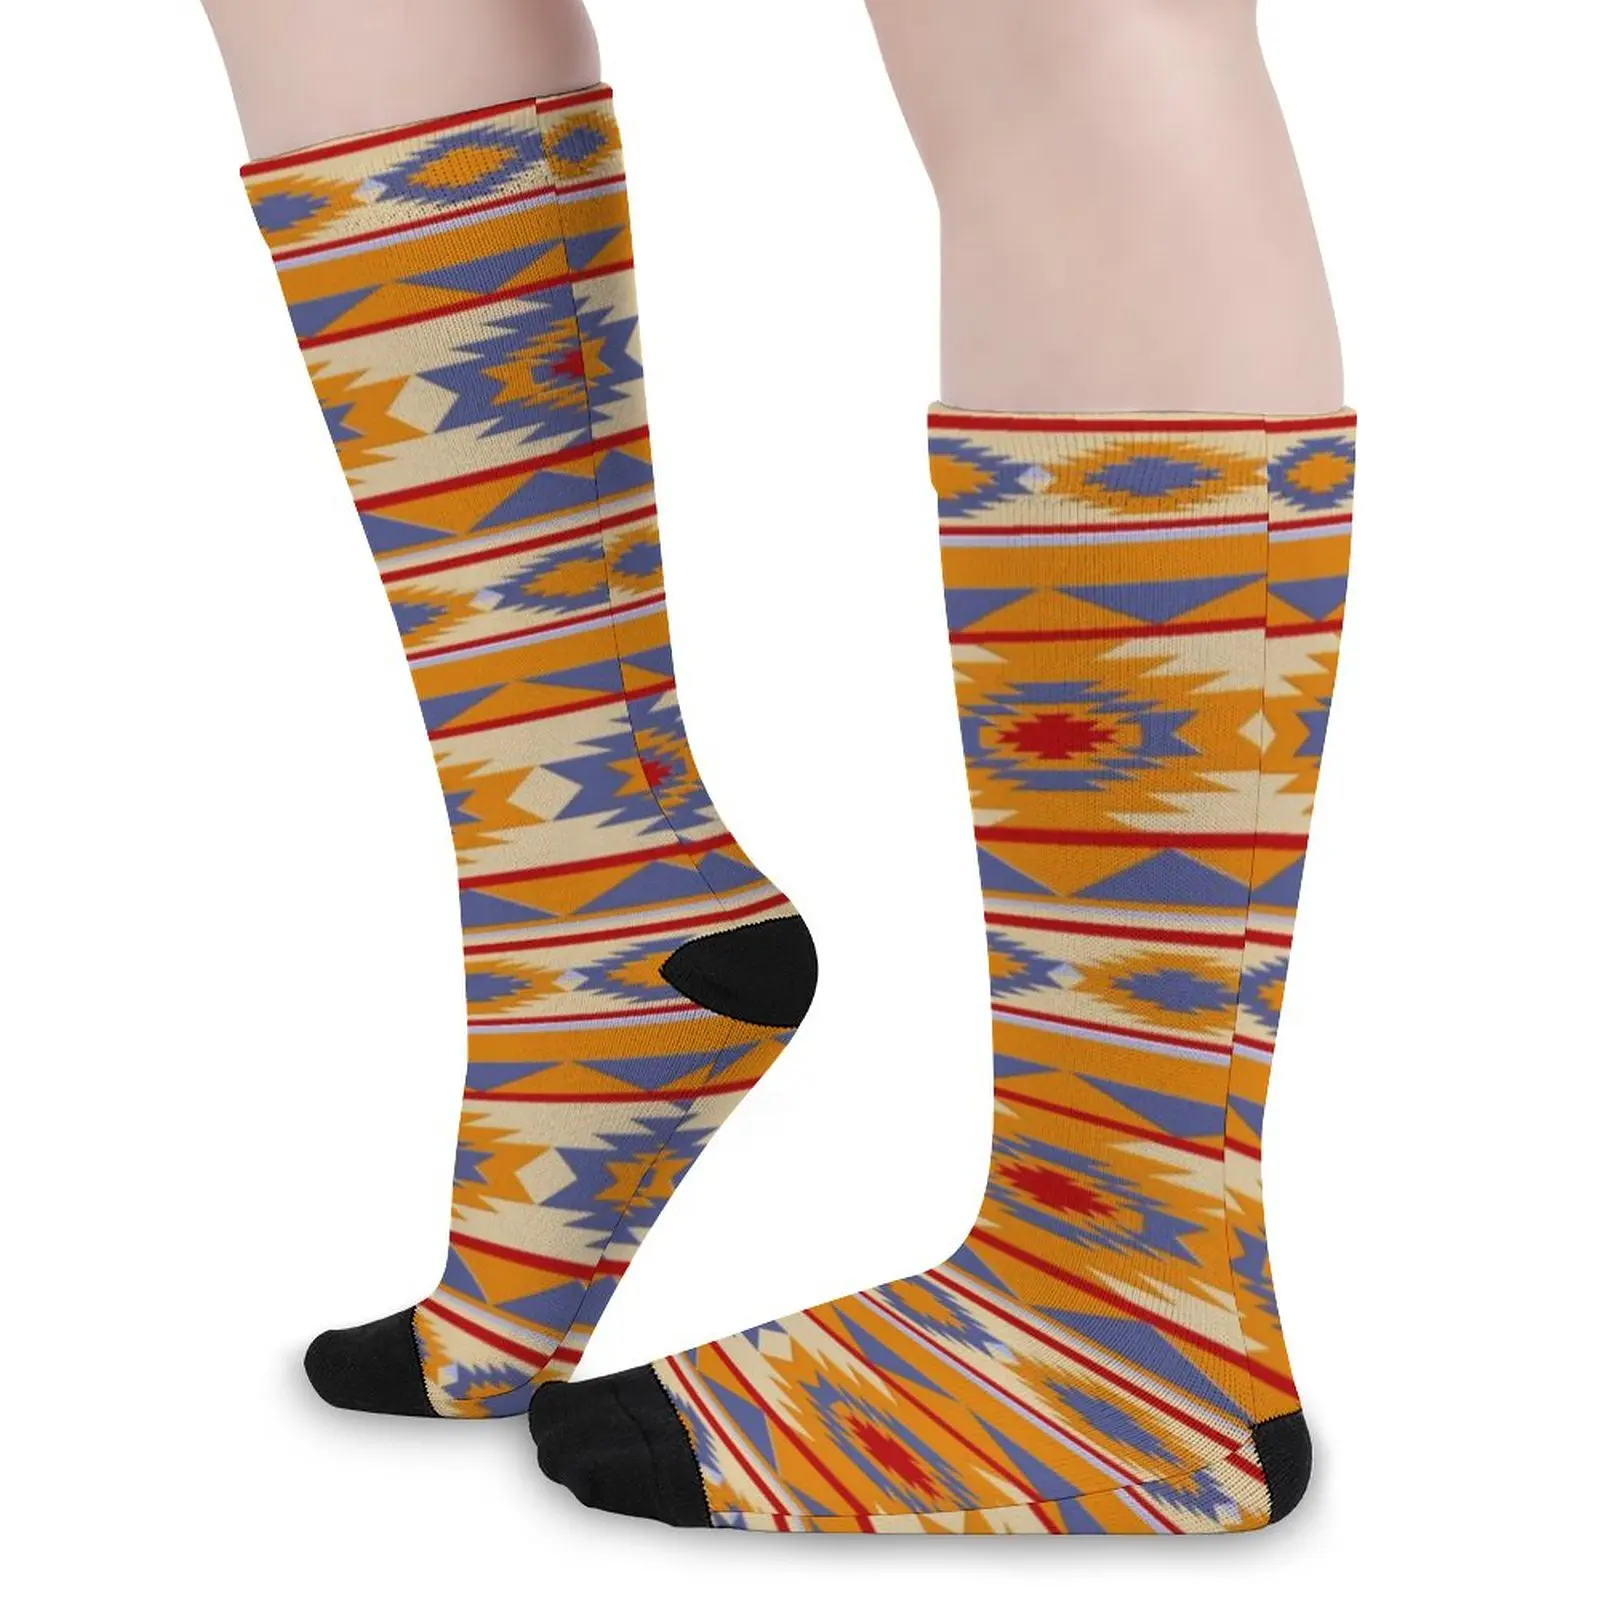 

Носки с этническим принтом, Элегантные чулки в западном стиле, весенние носки унисекс с защитой от пота, удобные носки с графическим рисунком для скейтборда